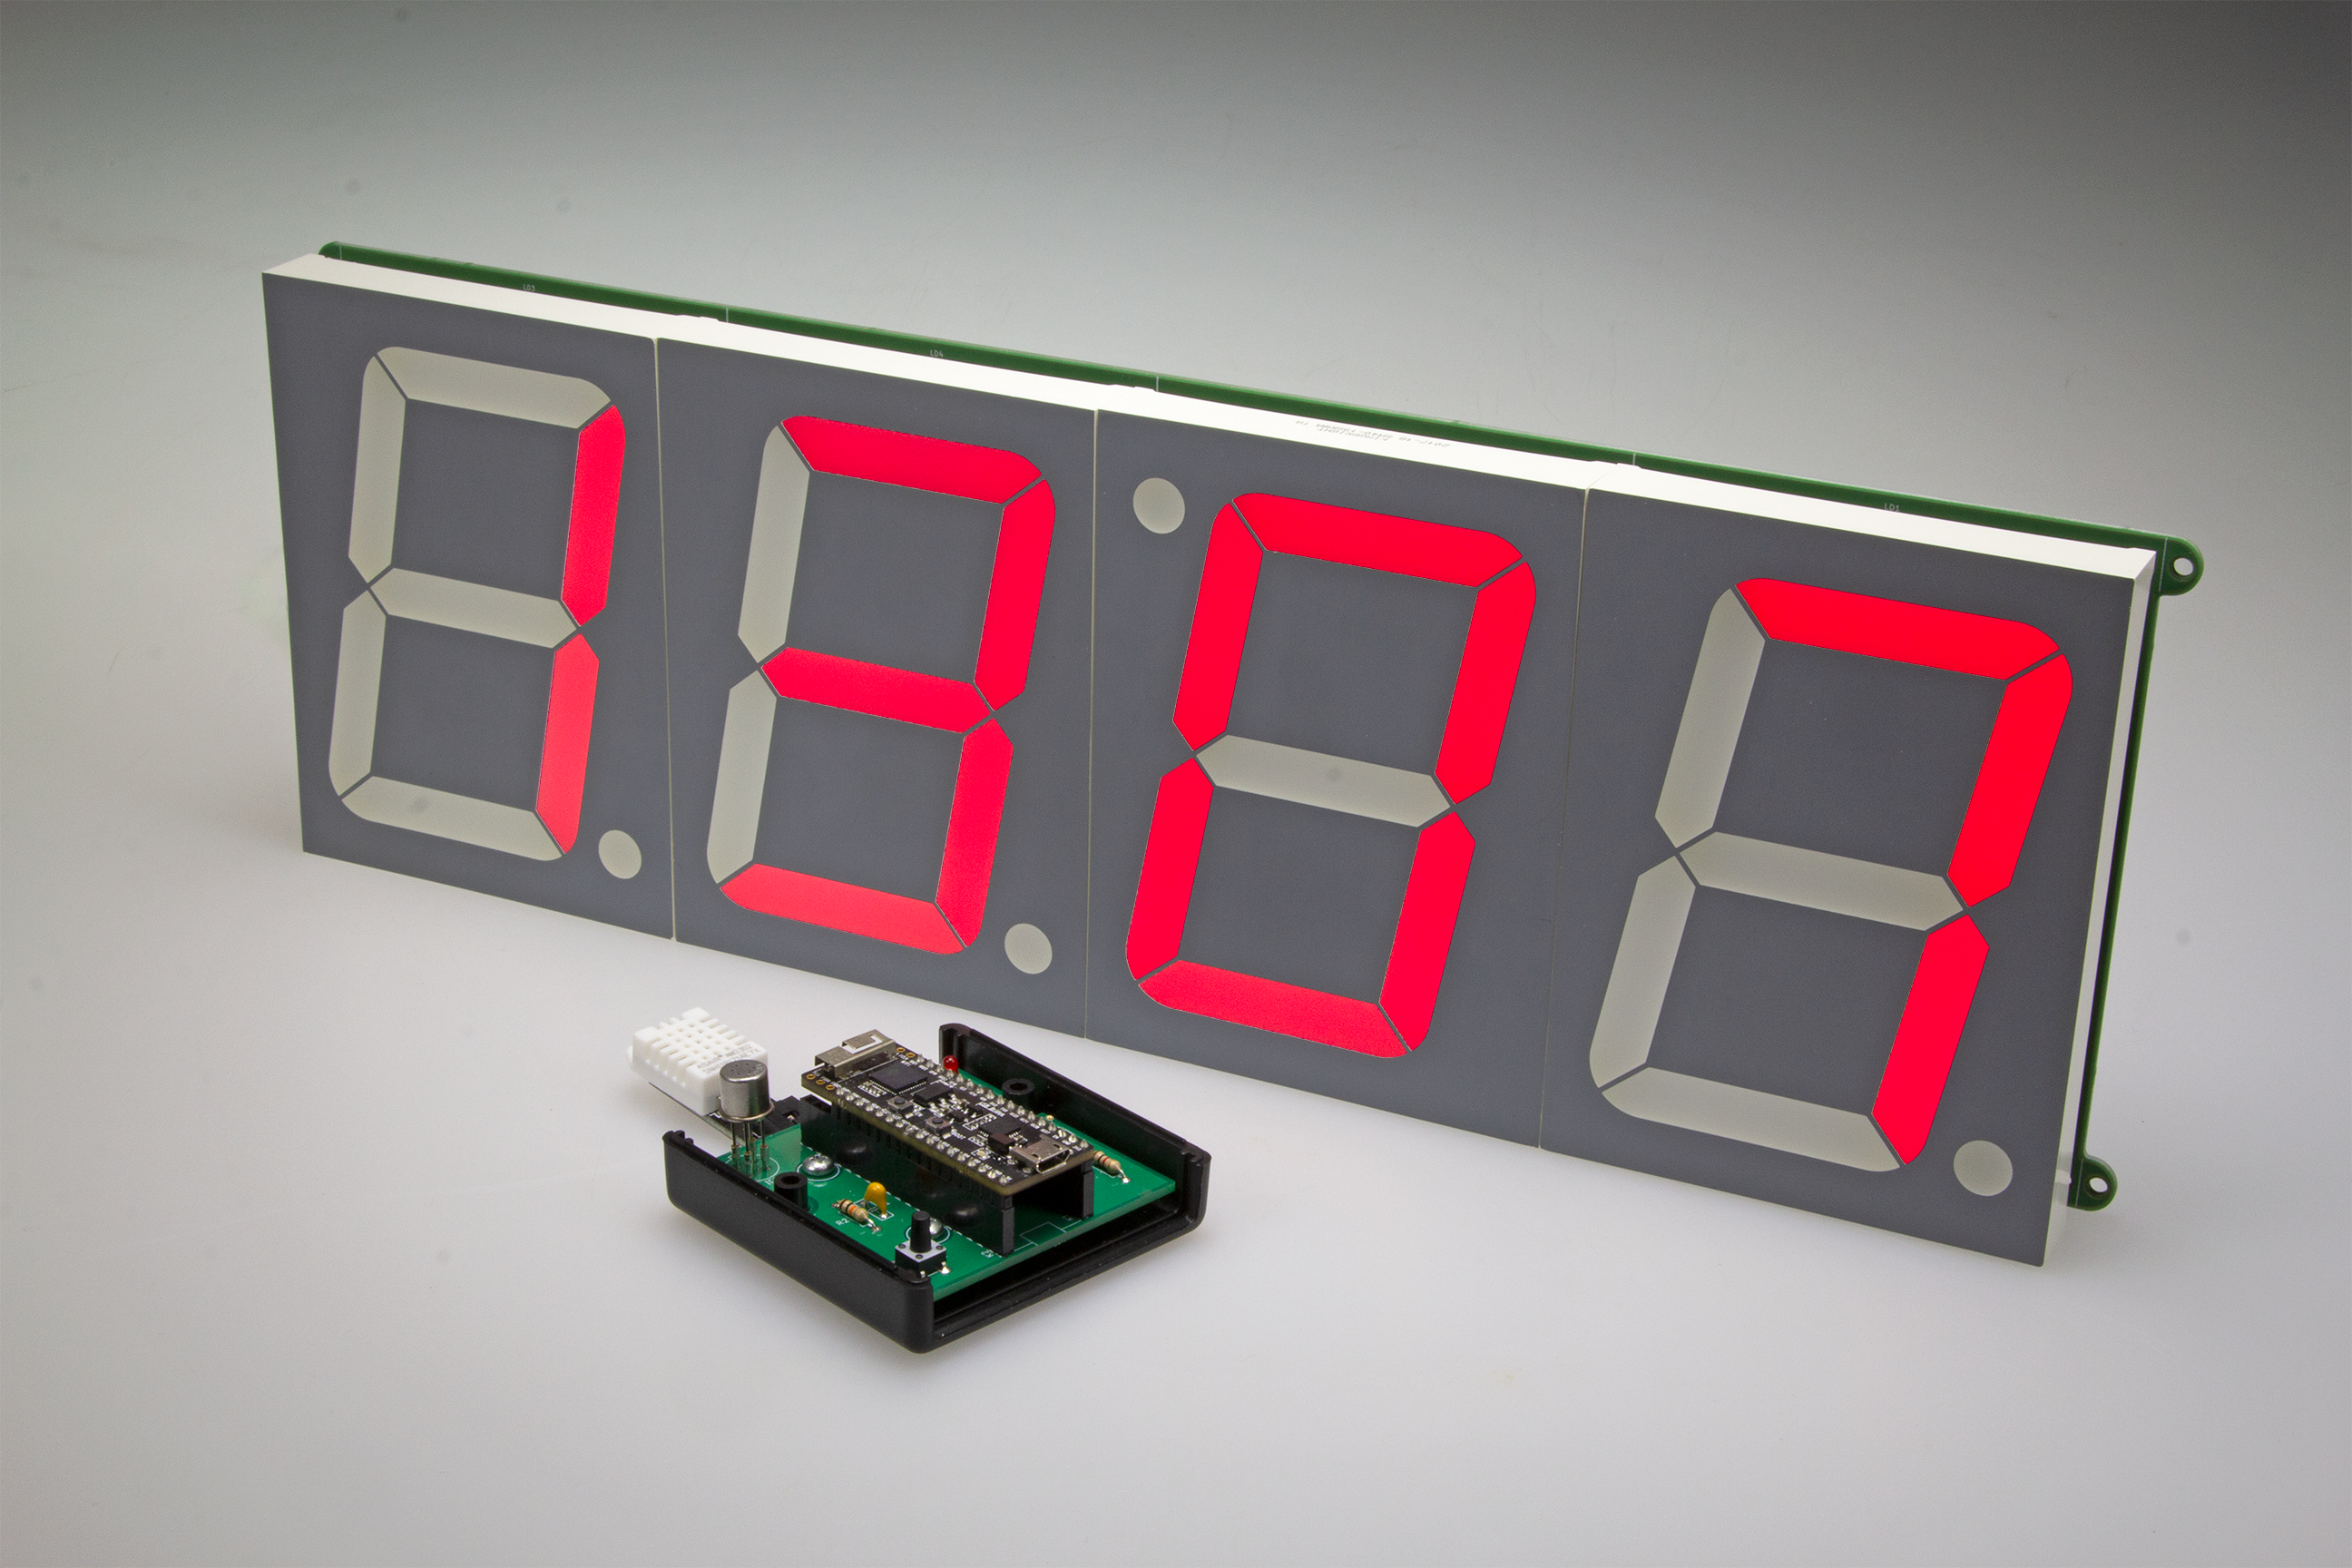 Monster-LED-Uhr mit WLAN und Temperatur-Anzeige